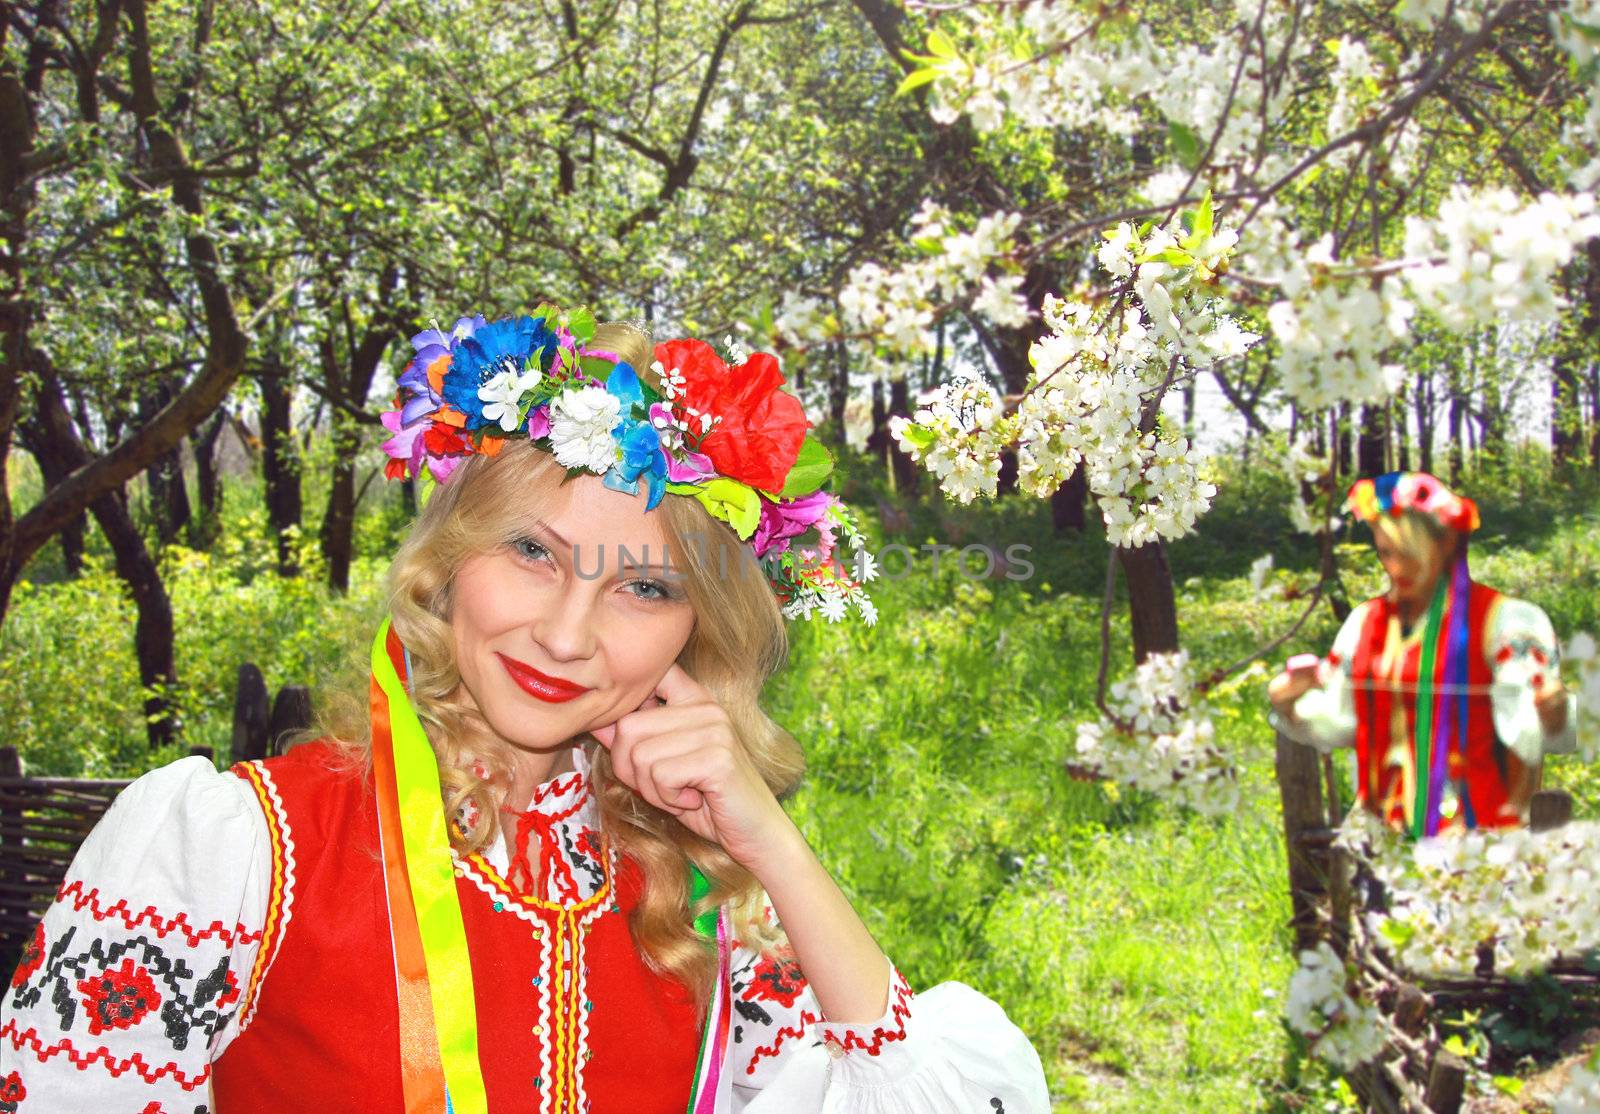 Ukrainian girl in national dress in a flowering spring garden by NickNick